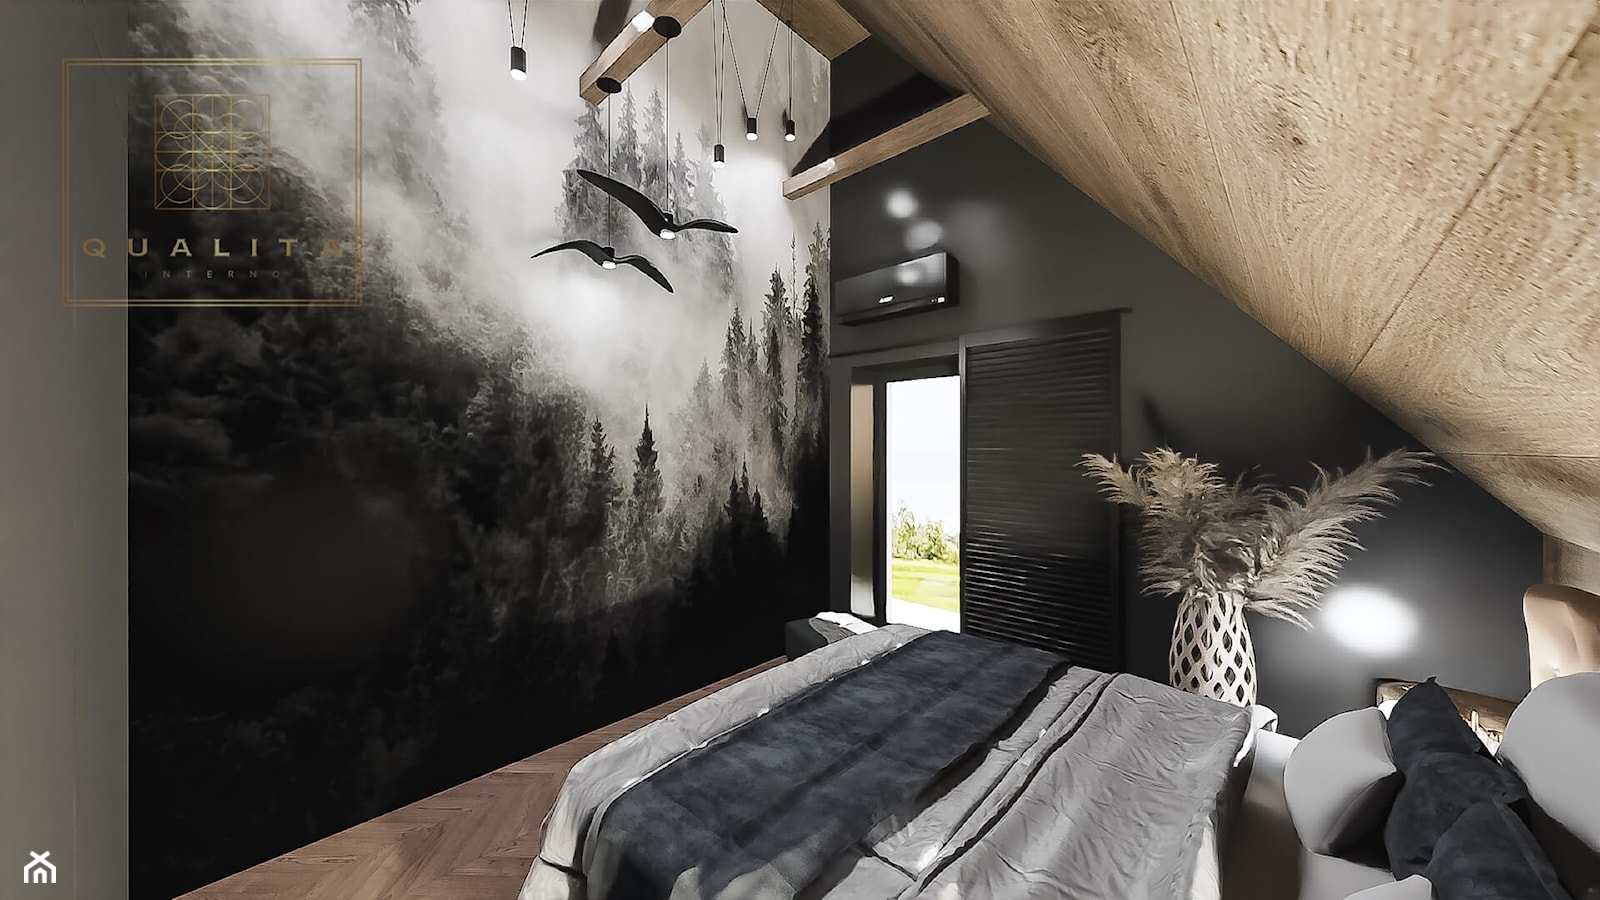 Ciemna sypialnia - nowoczesne aranżacje projekty inspiracje - zdjęcie od Qualita Interno - Homebook